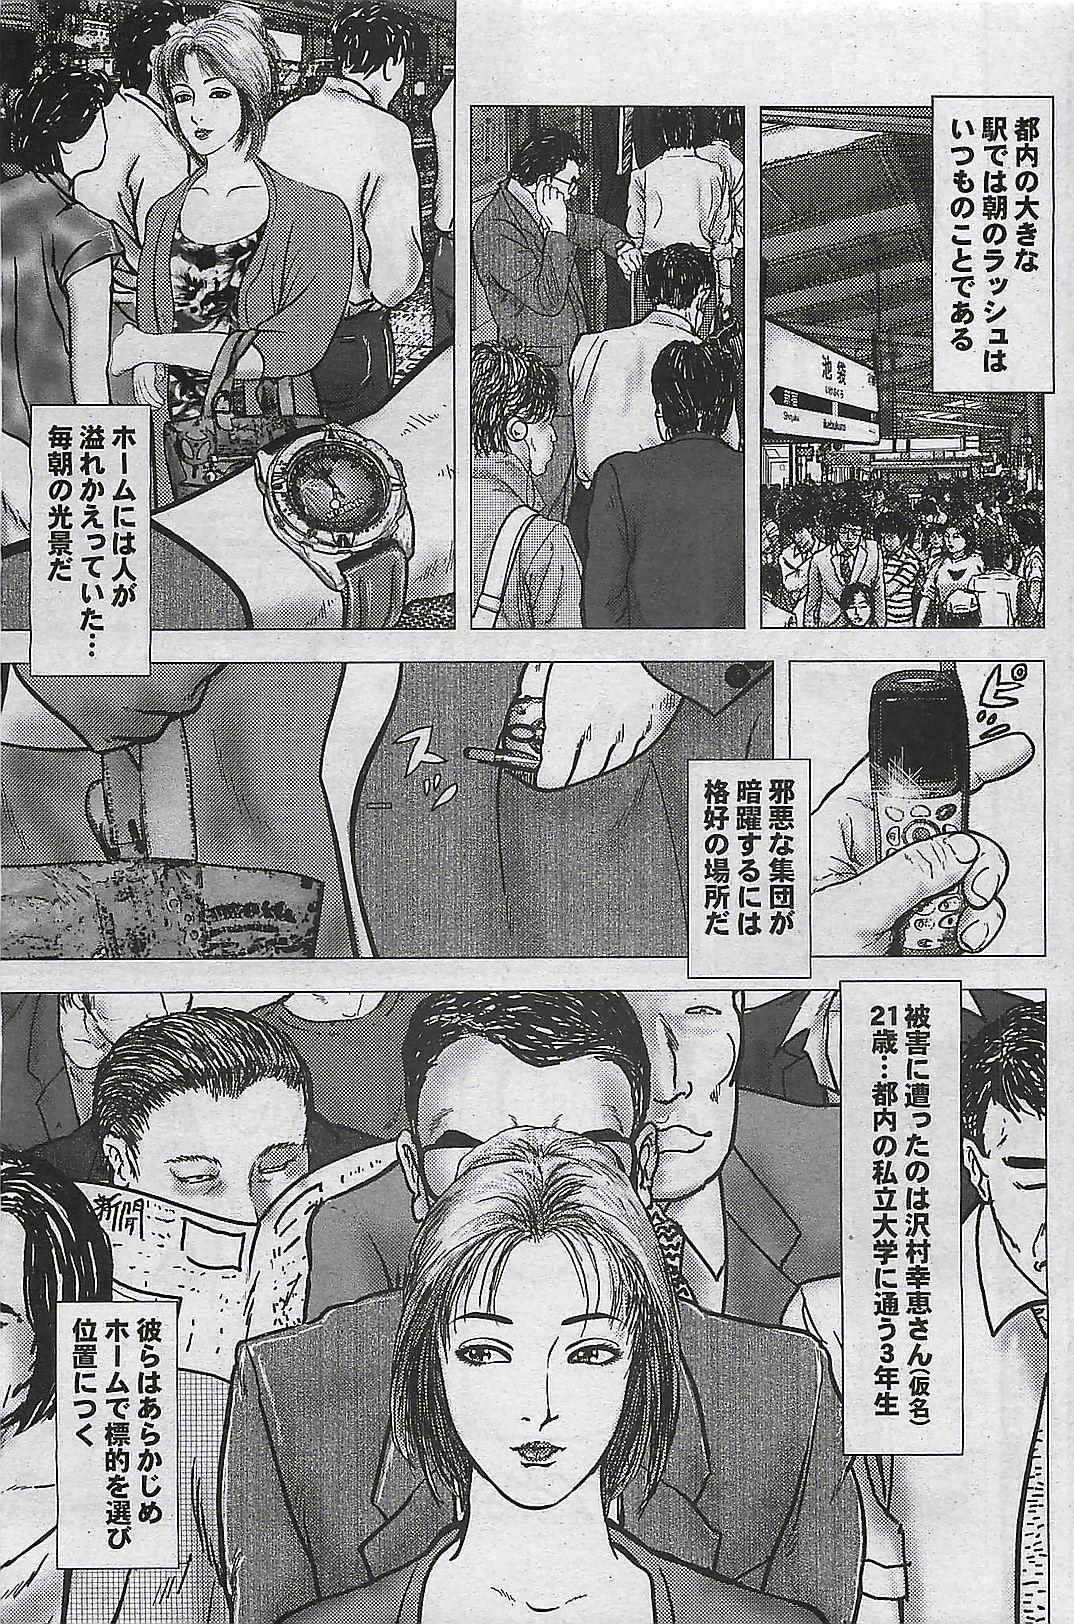 Mitsu-Man 2008-09 Vol. 1 84